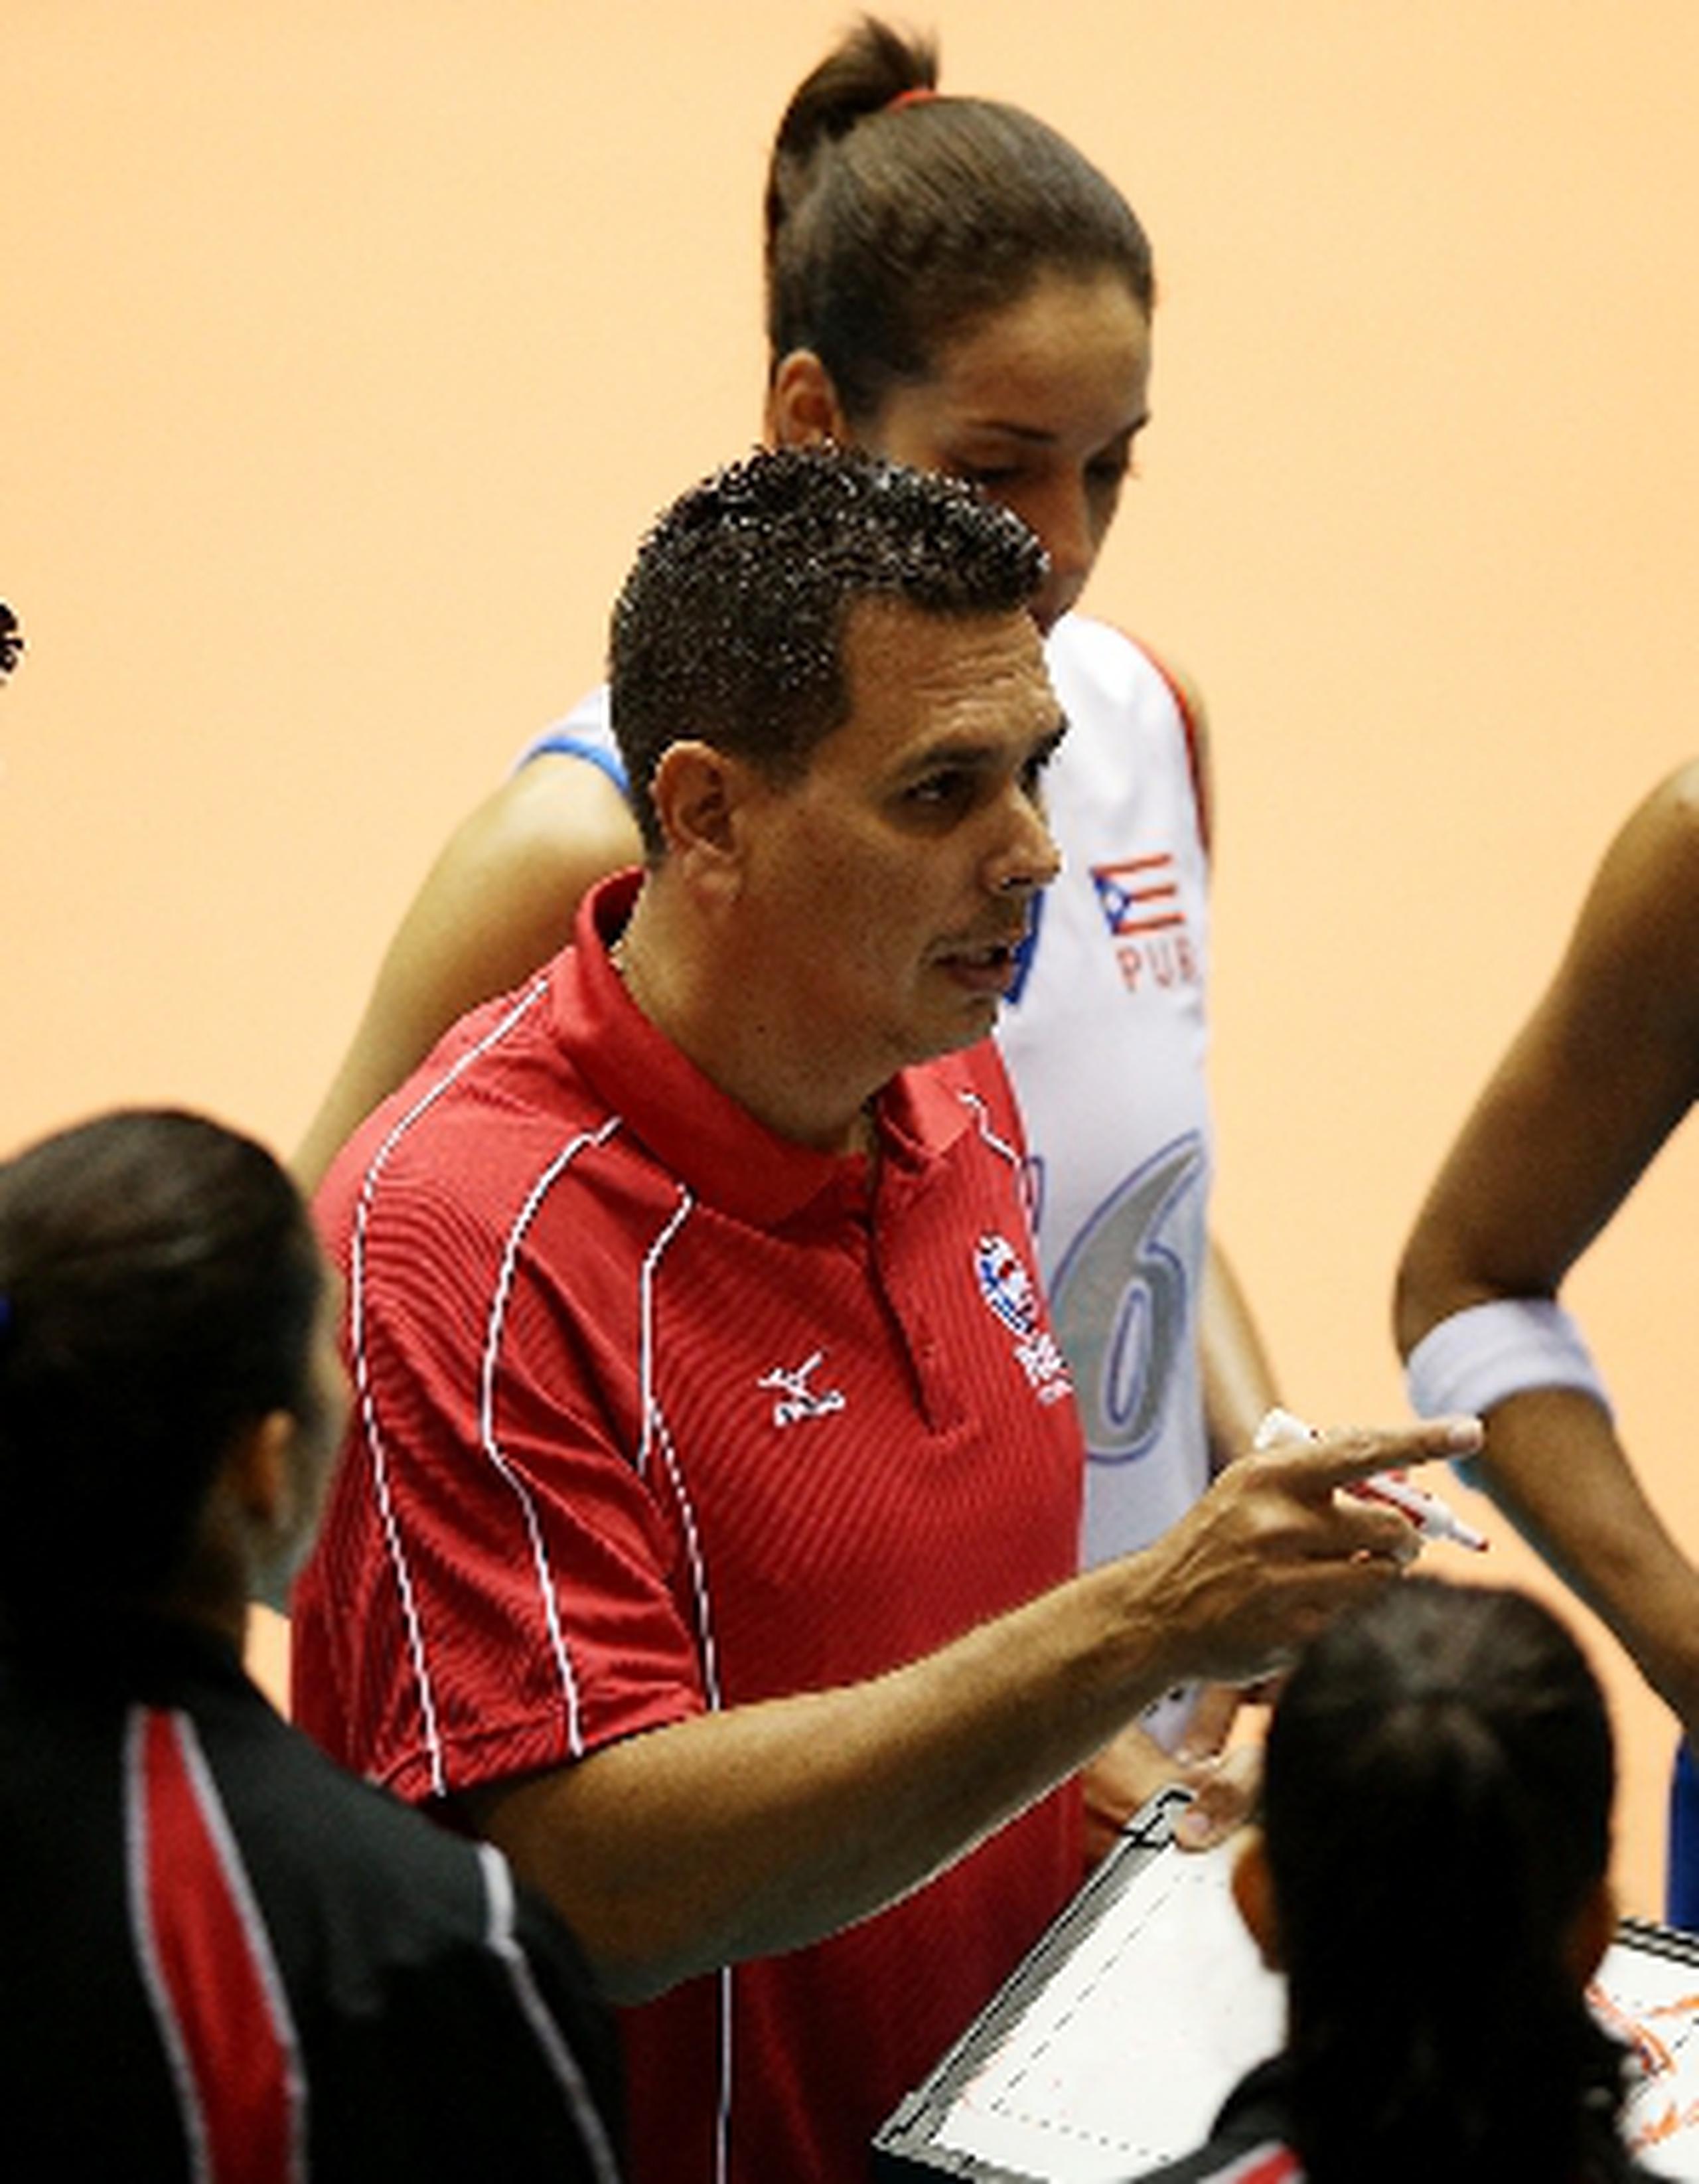 El técnico nacional José Mieles dijo que las prácticas de la Preselección de cara al torneo de la Federación Internacional de Voleibol comenzarán el martes. (Archivo)